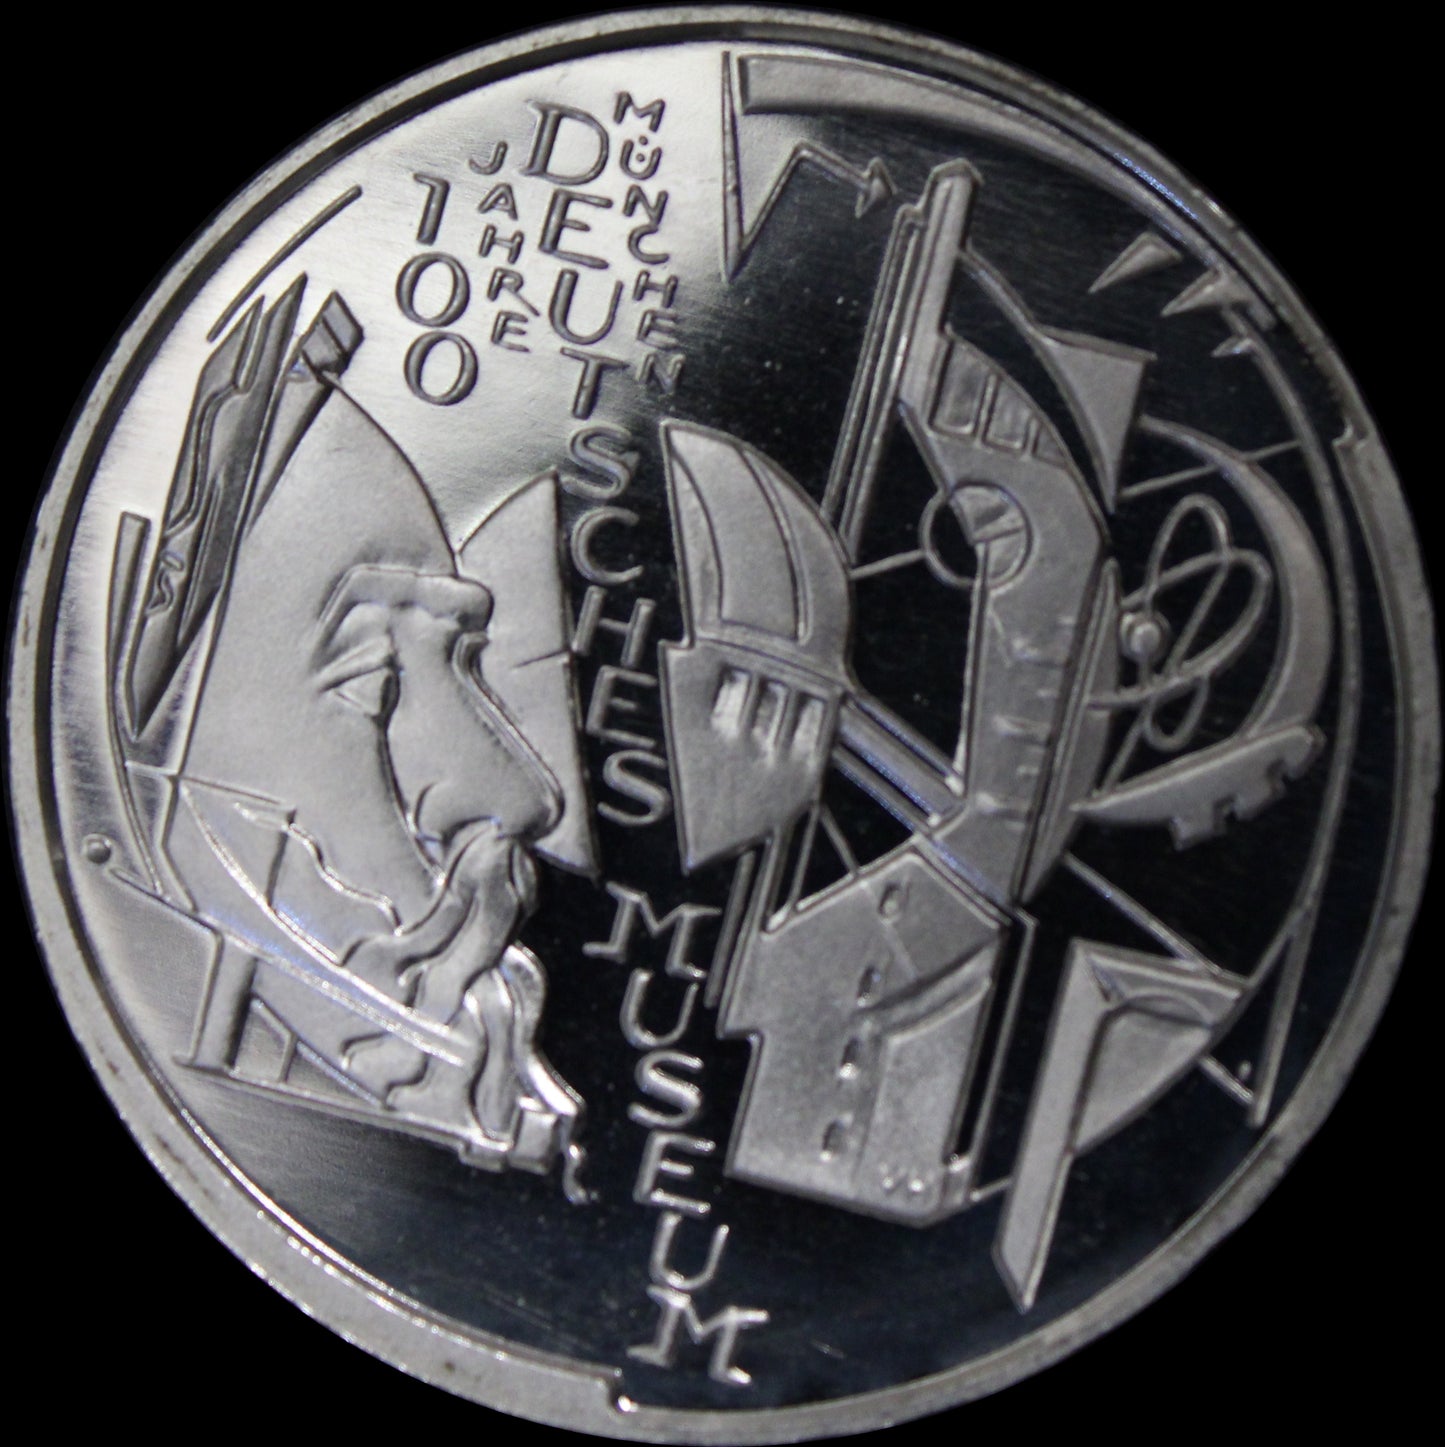 100 JHARE DEUTSCHES MUSEUM MÜNCHEN, Serie 10 € Silber Gedenkmünzen Deutschland, Spiegelglanz, 2002